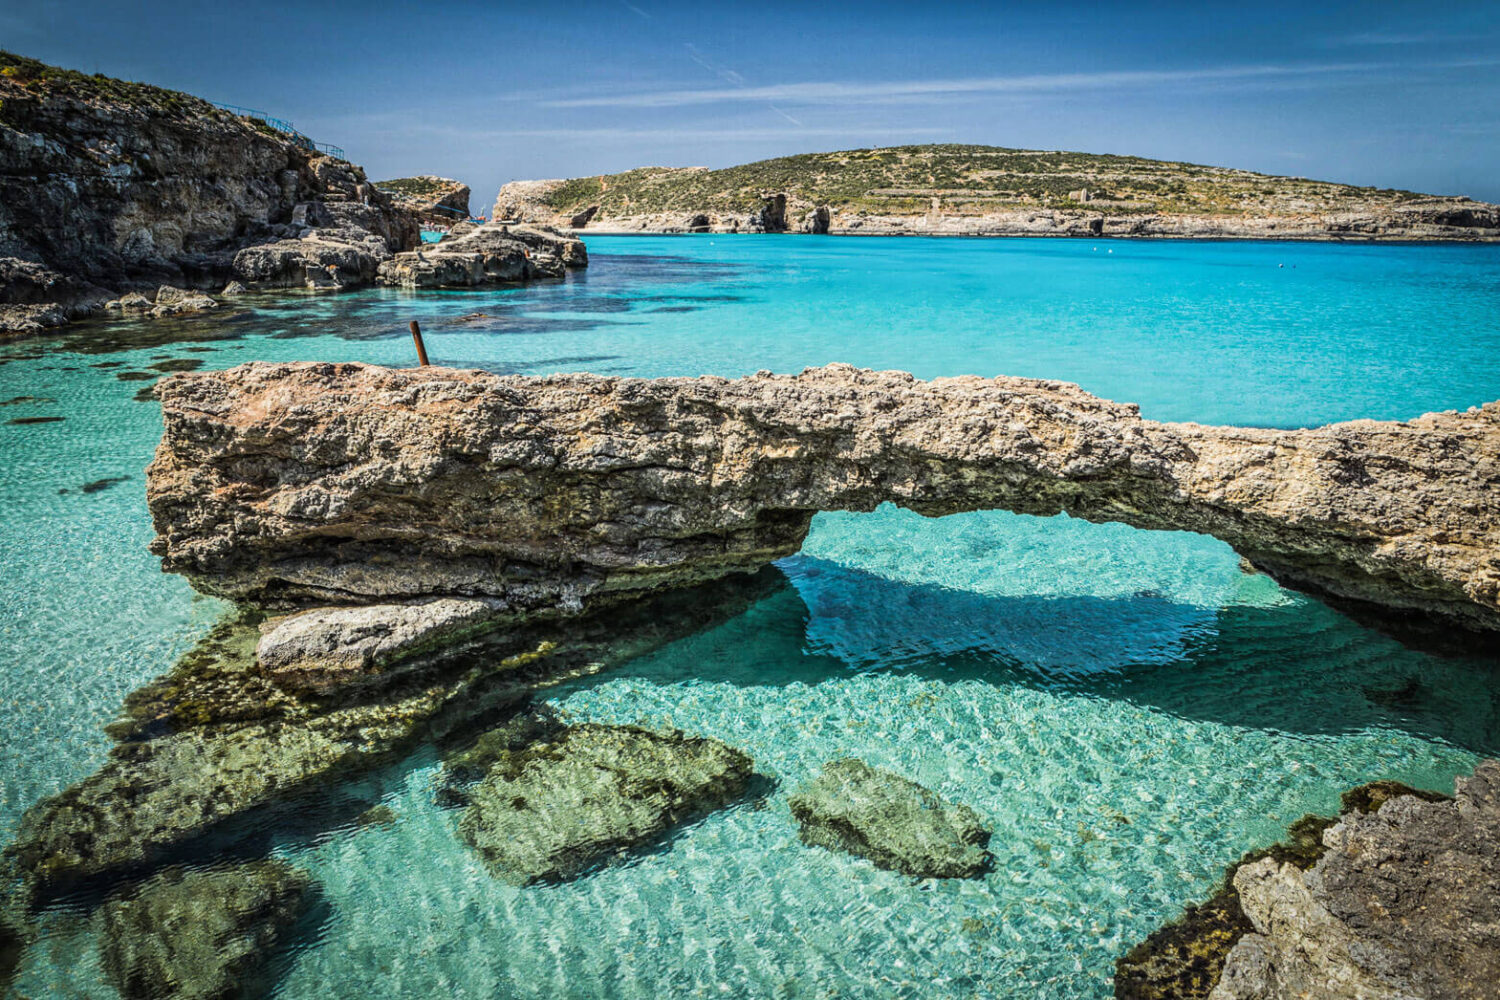 Malta | Sail OnSea